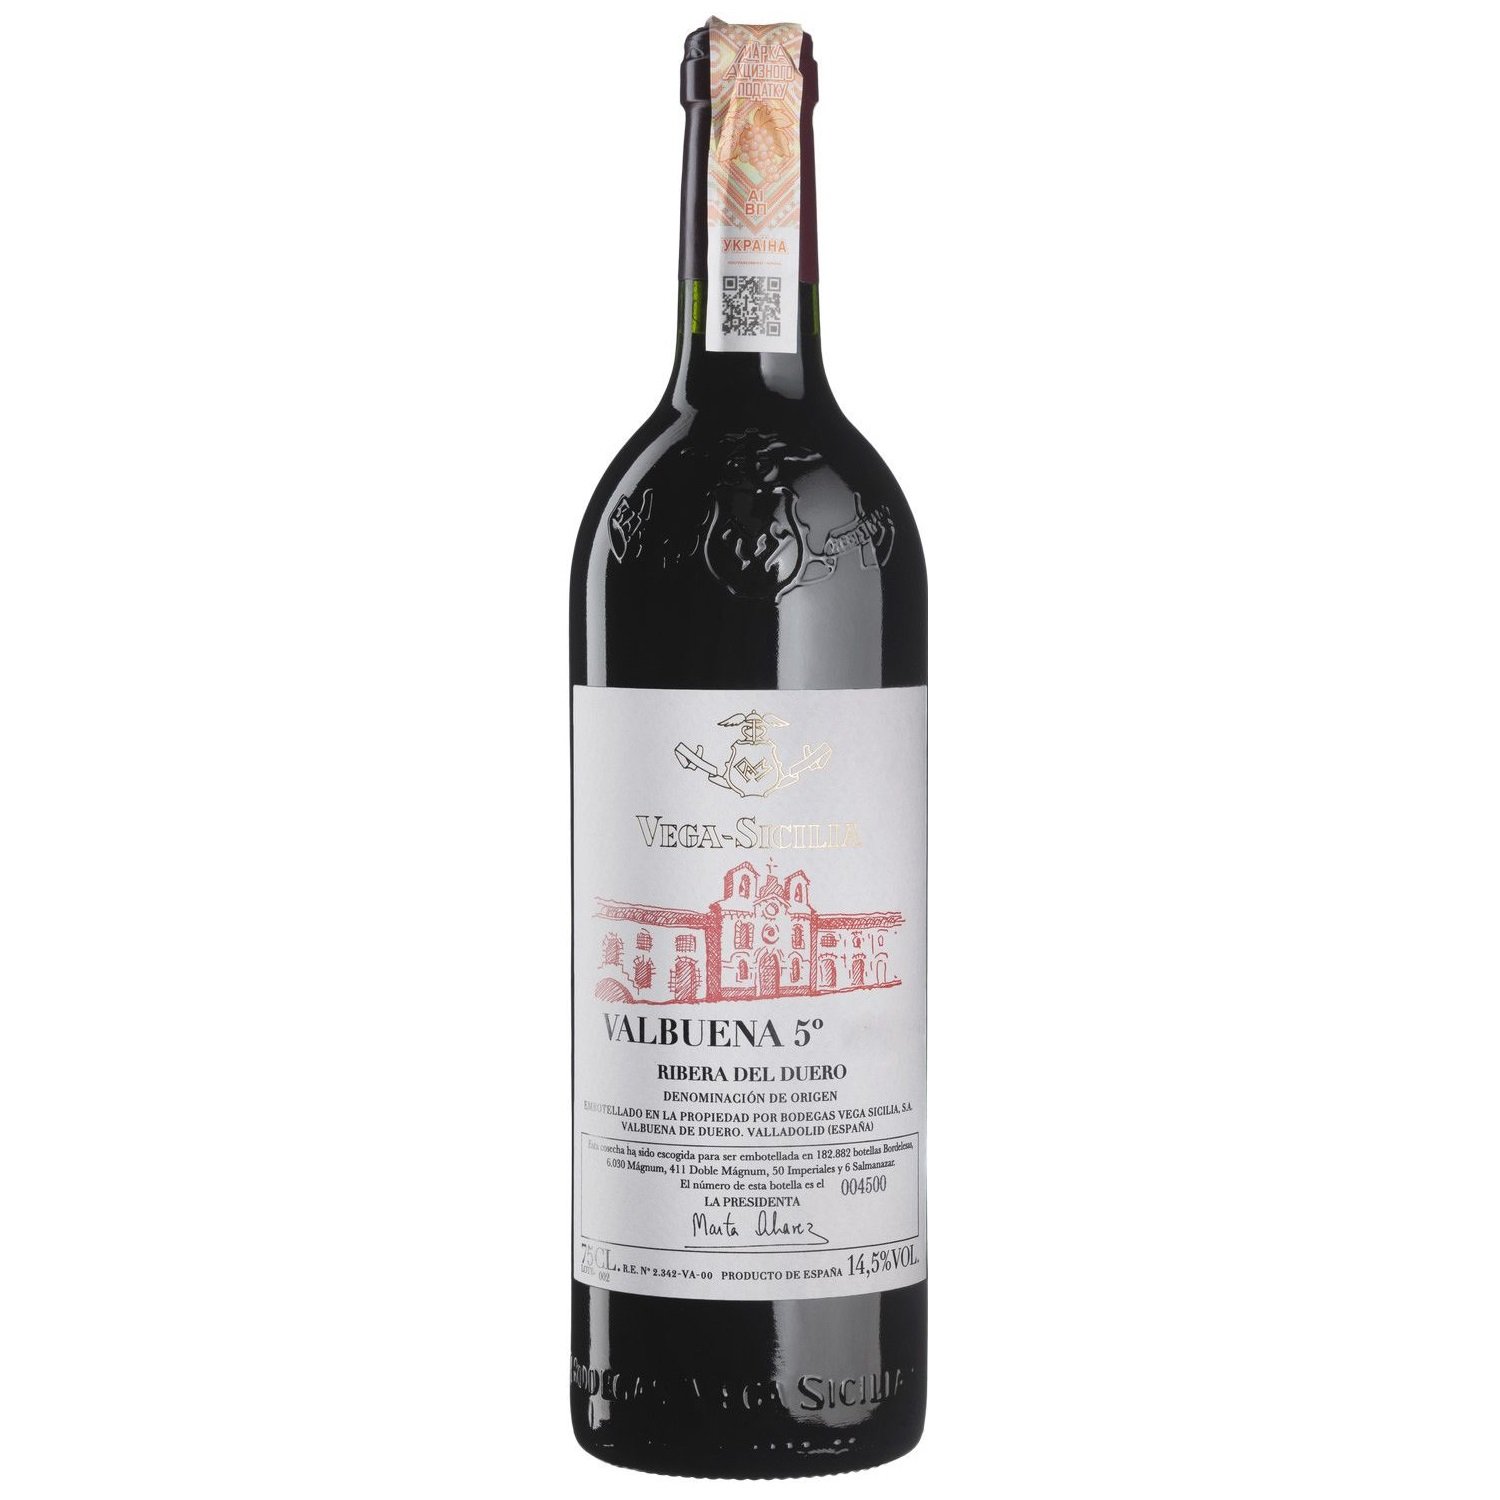 Вино Vega Sicilia Valbuena 5° 2017, червоне, сухе, 0,75 л (W4900) - фото 1